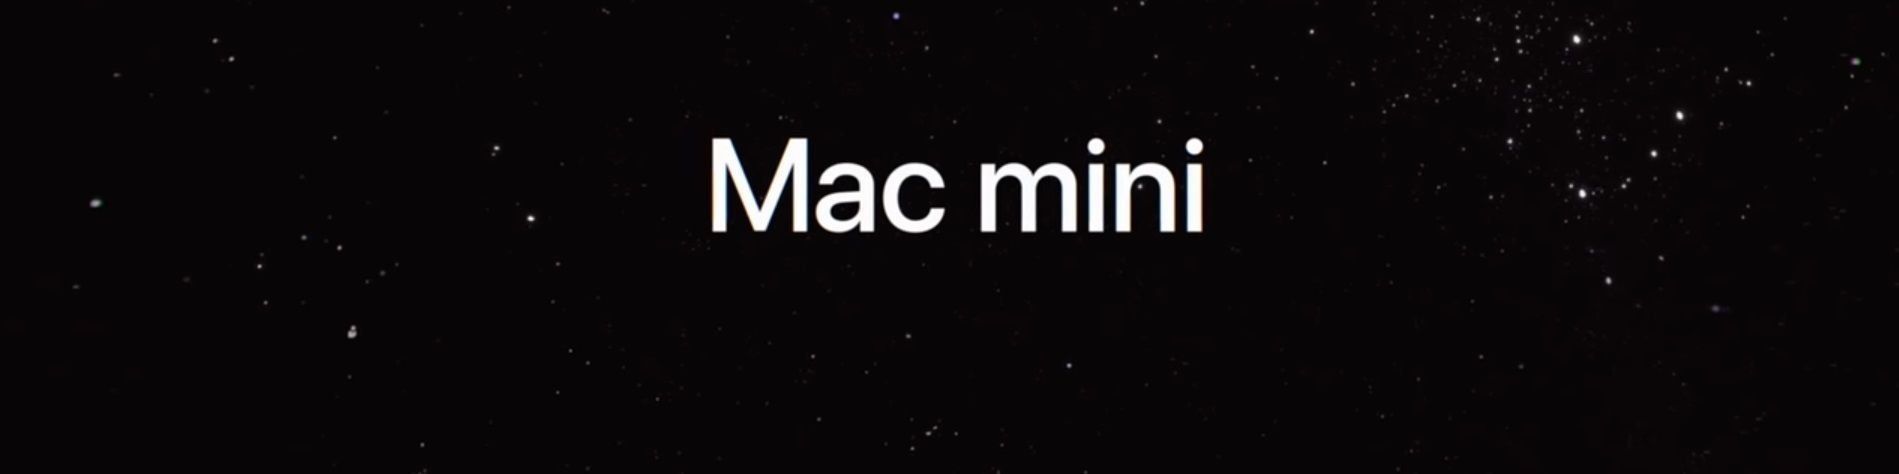 Apple Mac mini 2018 - יתרונות וחסרונות